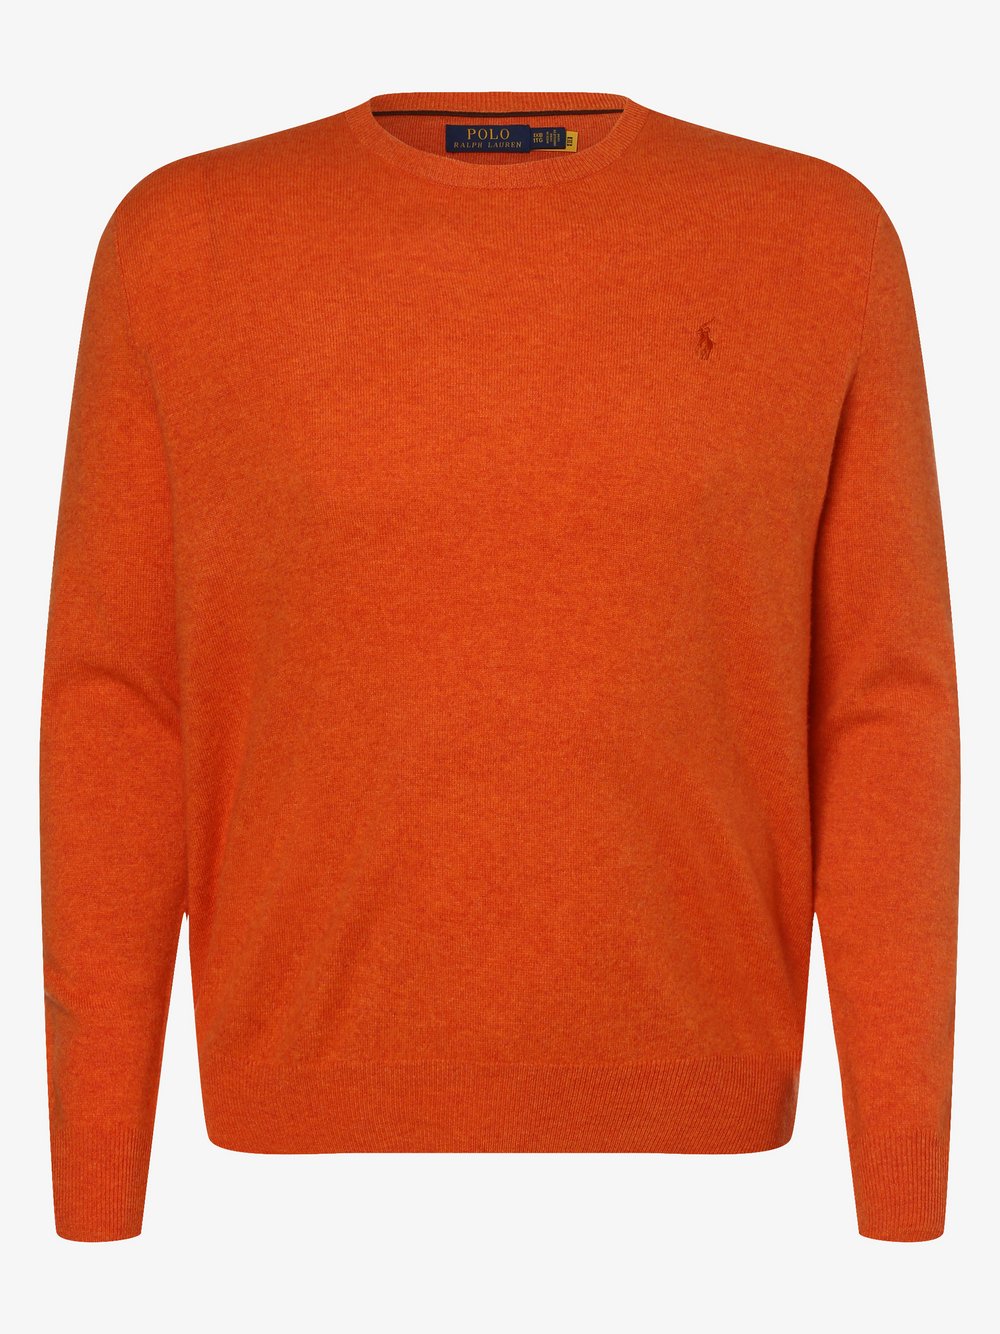 Polo Ralph Lauren - Sweter męski – duże rozmiary, pomarańczowy